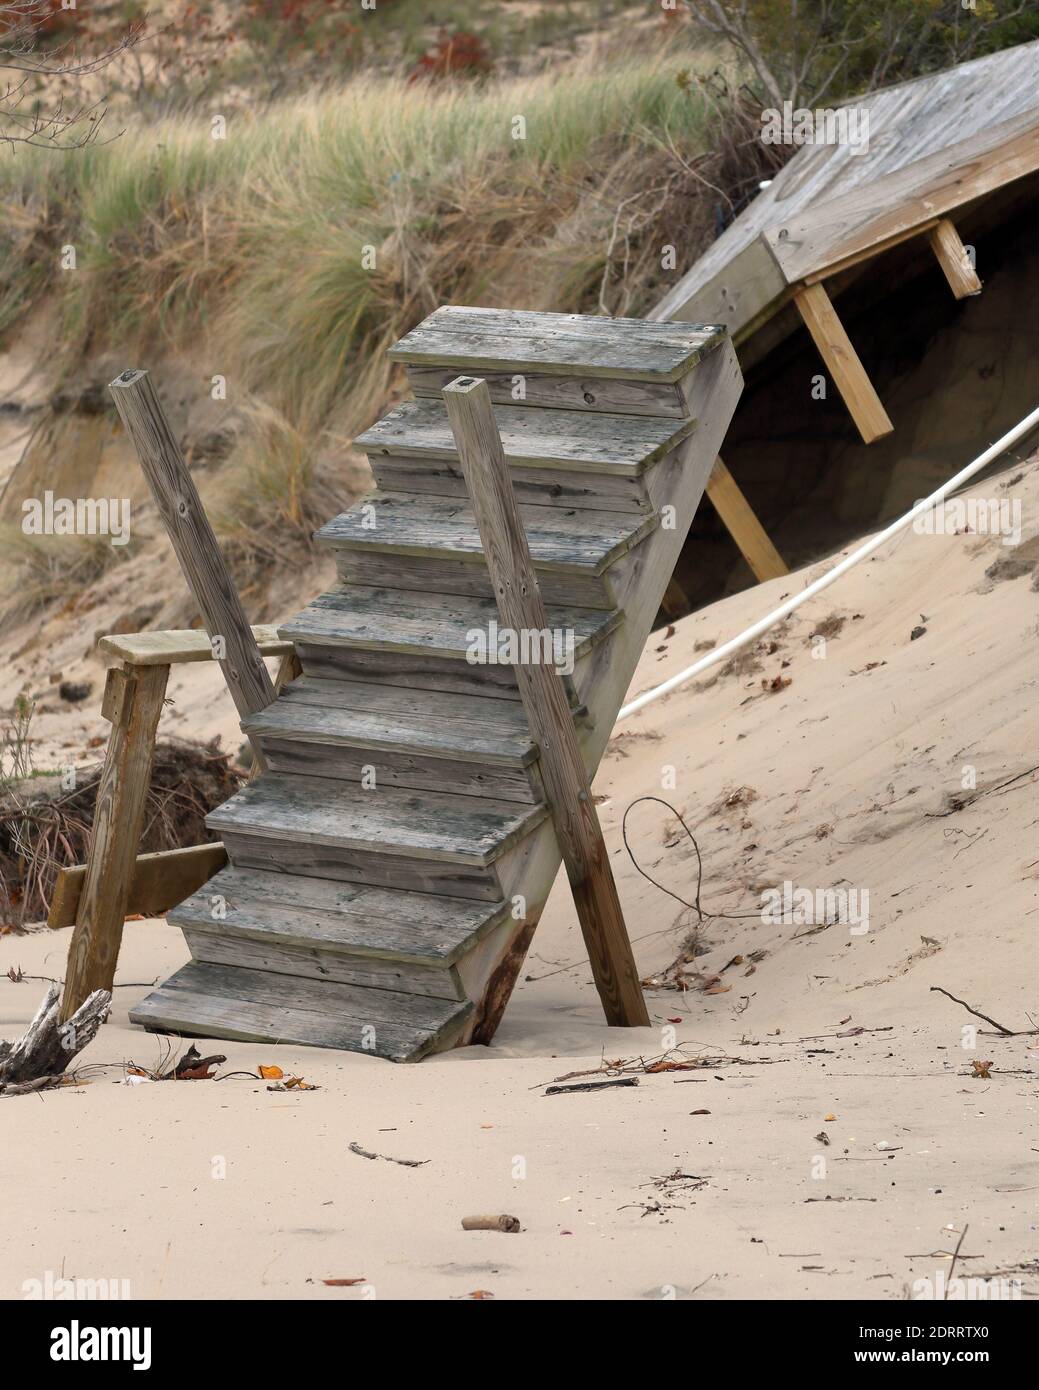 La erosión dañó la escalera de madera construida en el borde arenoso de Lago Michigan Foto de stock